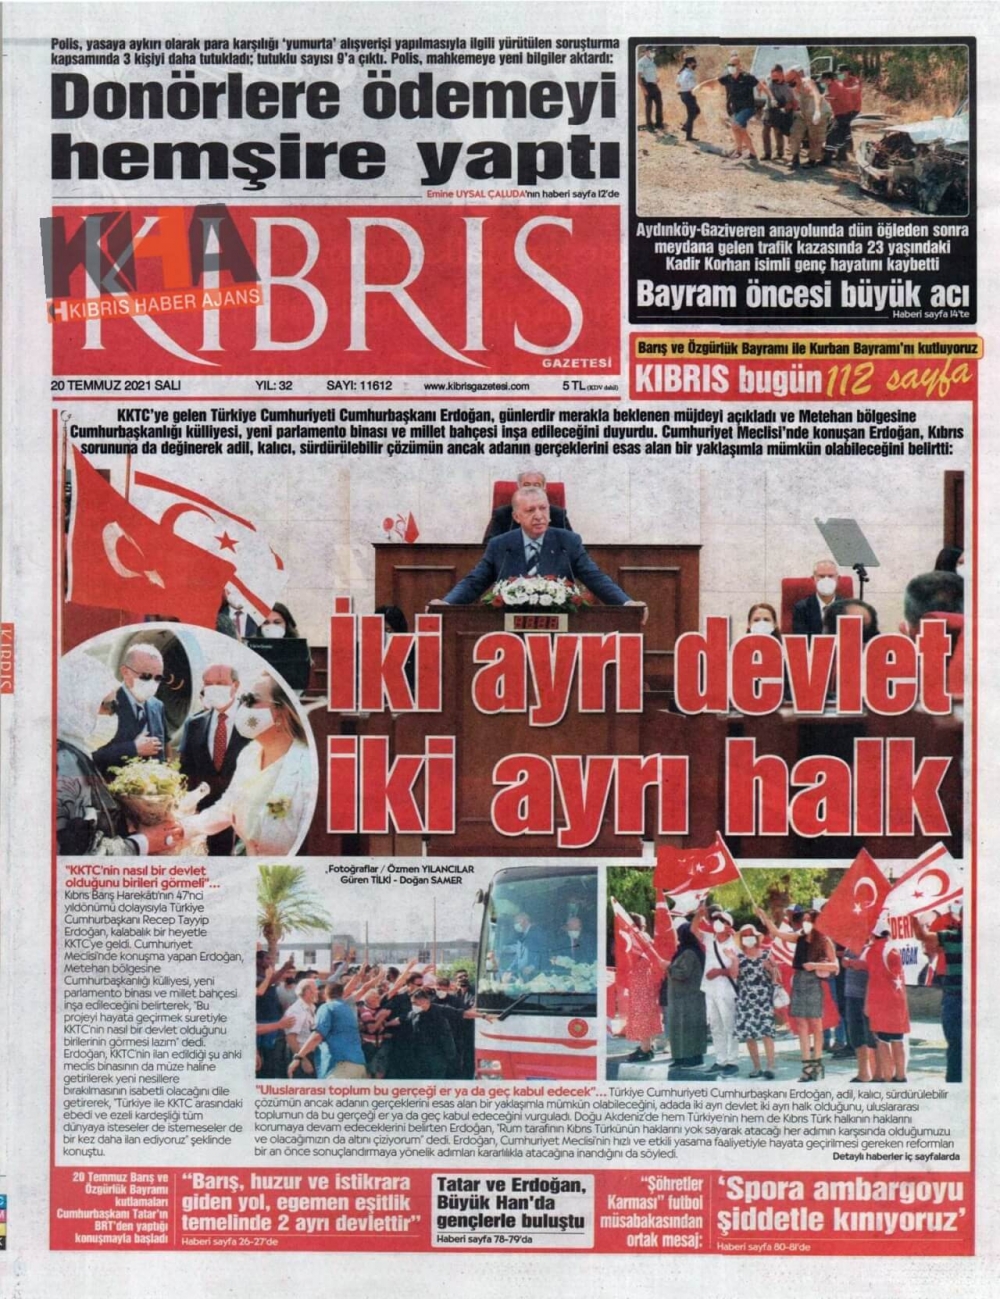 KKTC'de basılı gazeteler Erdoğan'ın Müjdesini nasıl gördü? galerisi resim 6